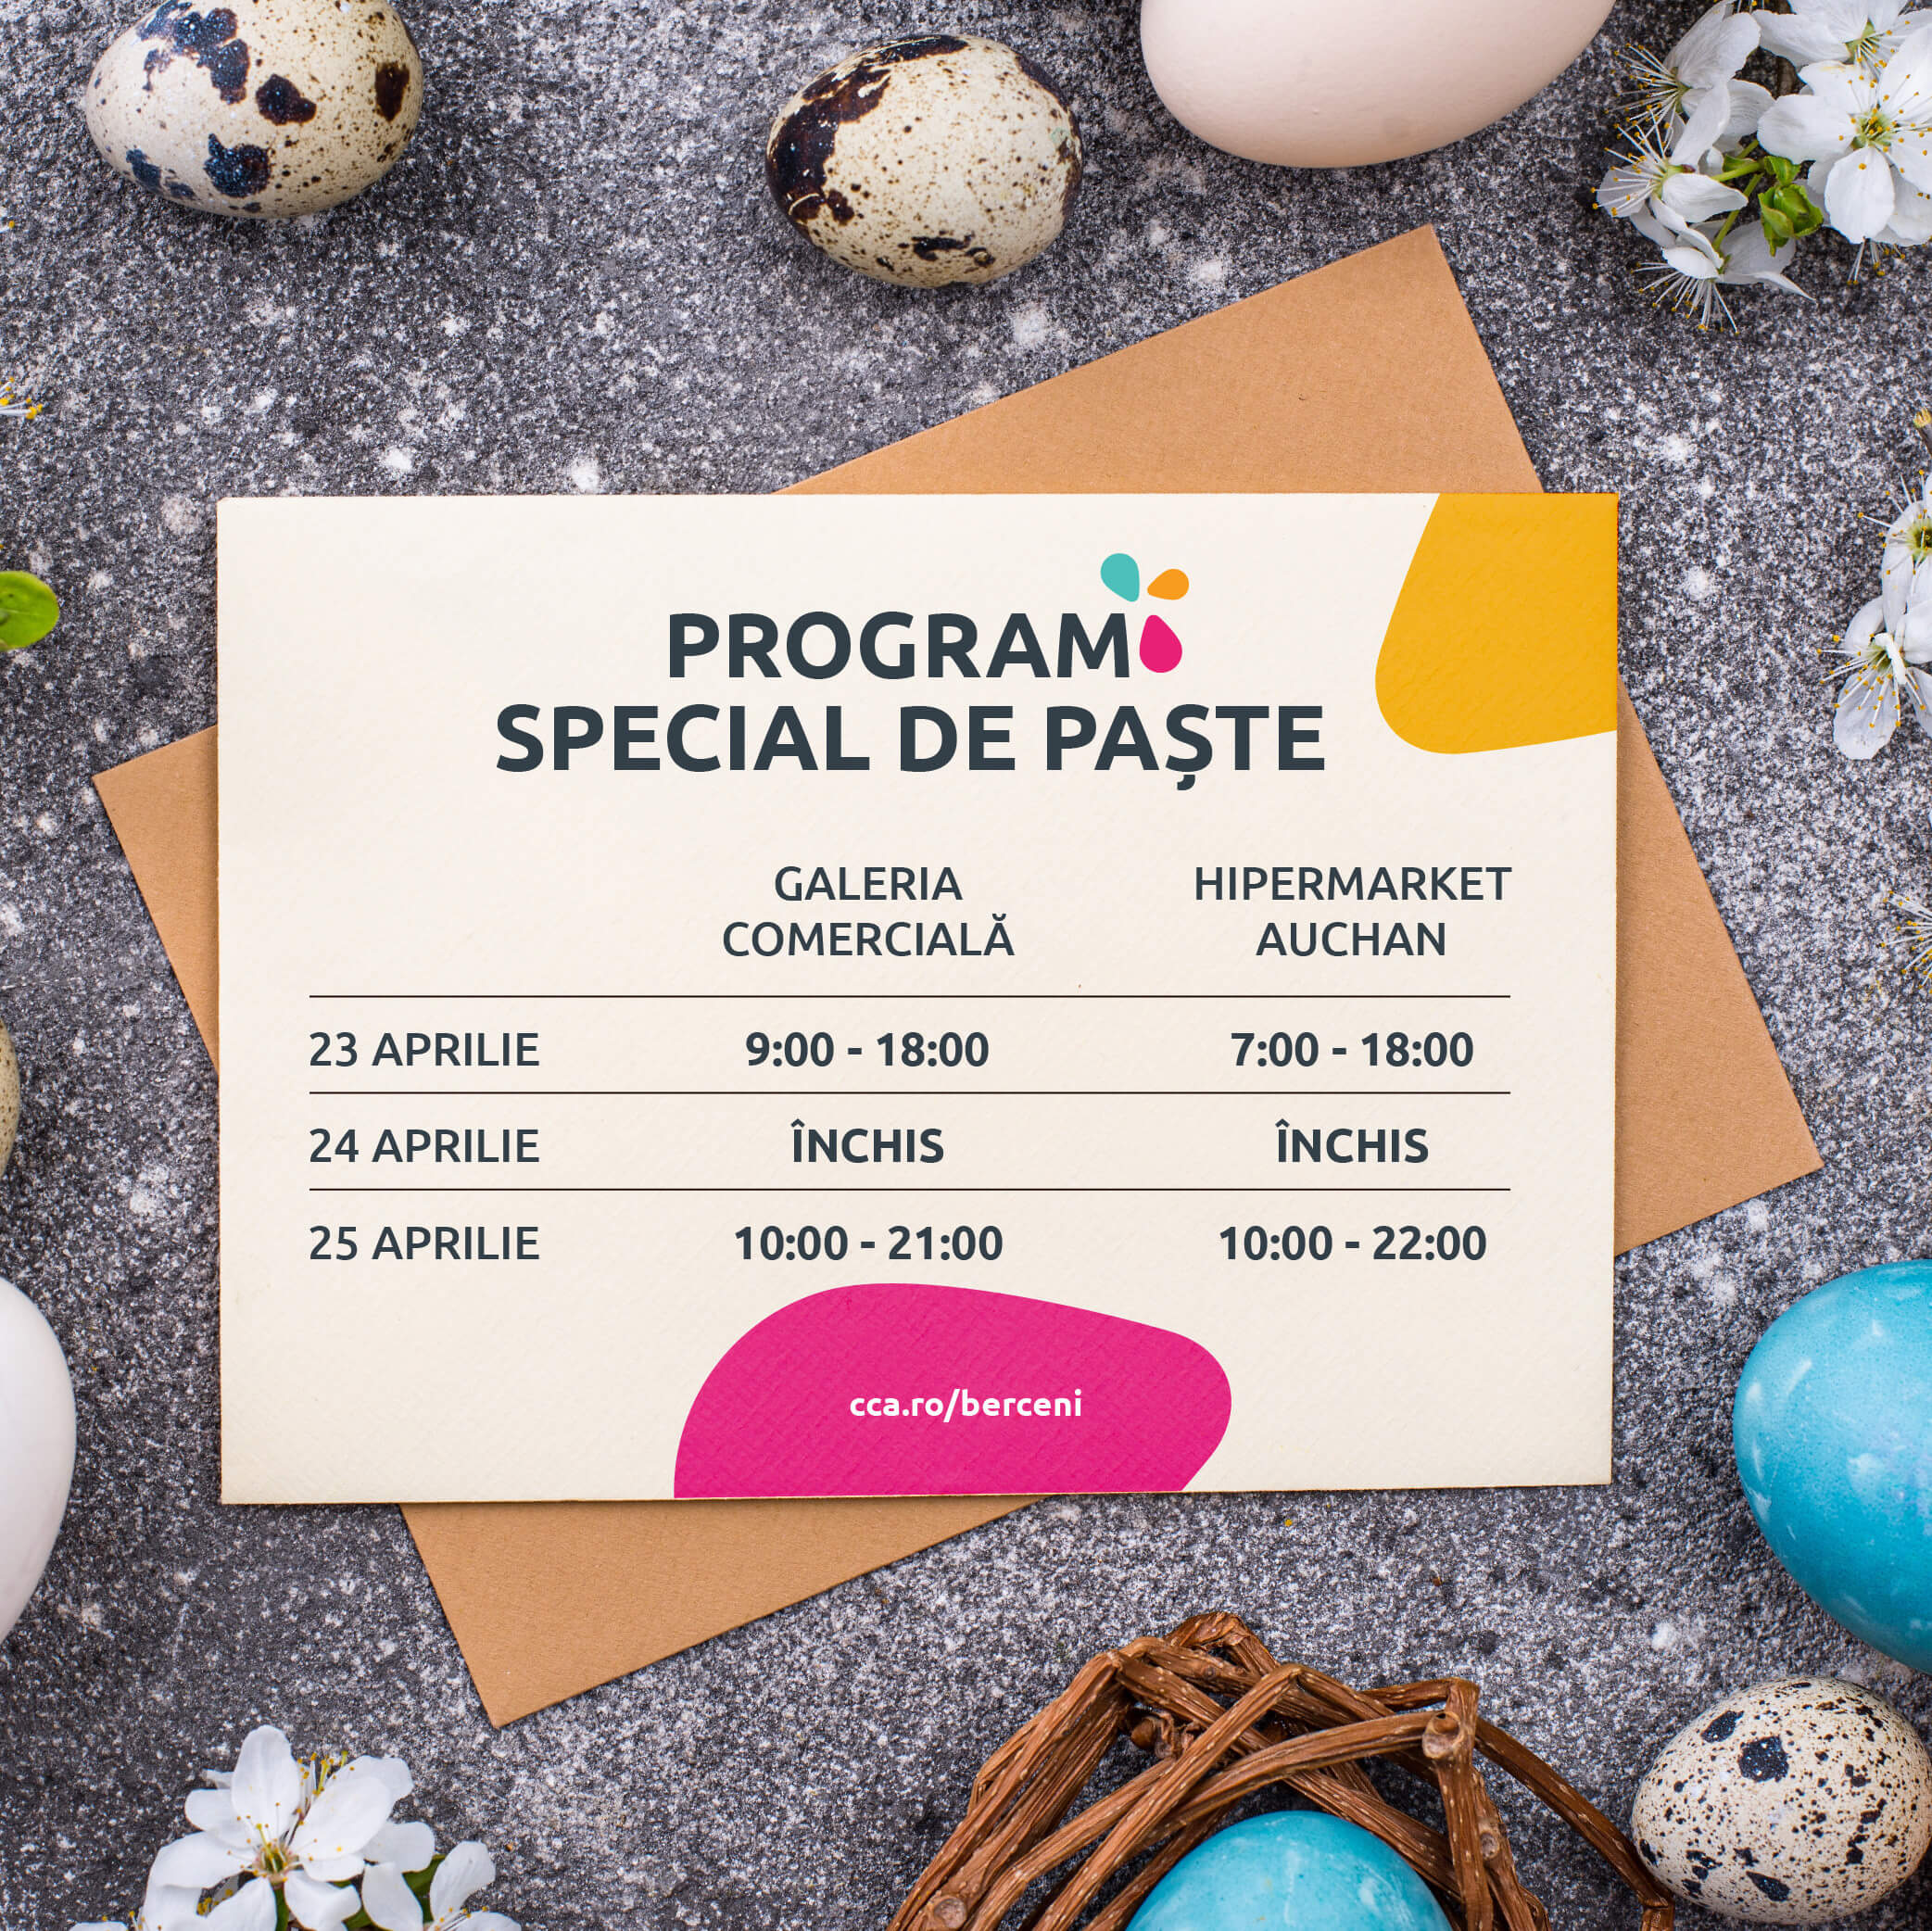 Programul de Paște al galeriei comerciale și hipermarketului Auchan